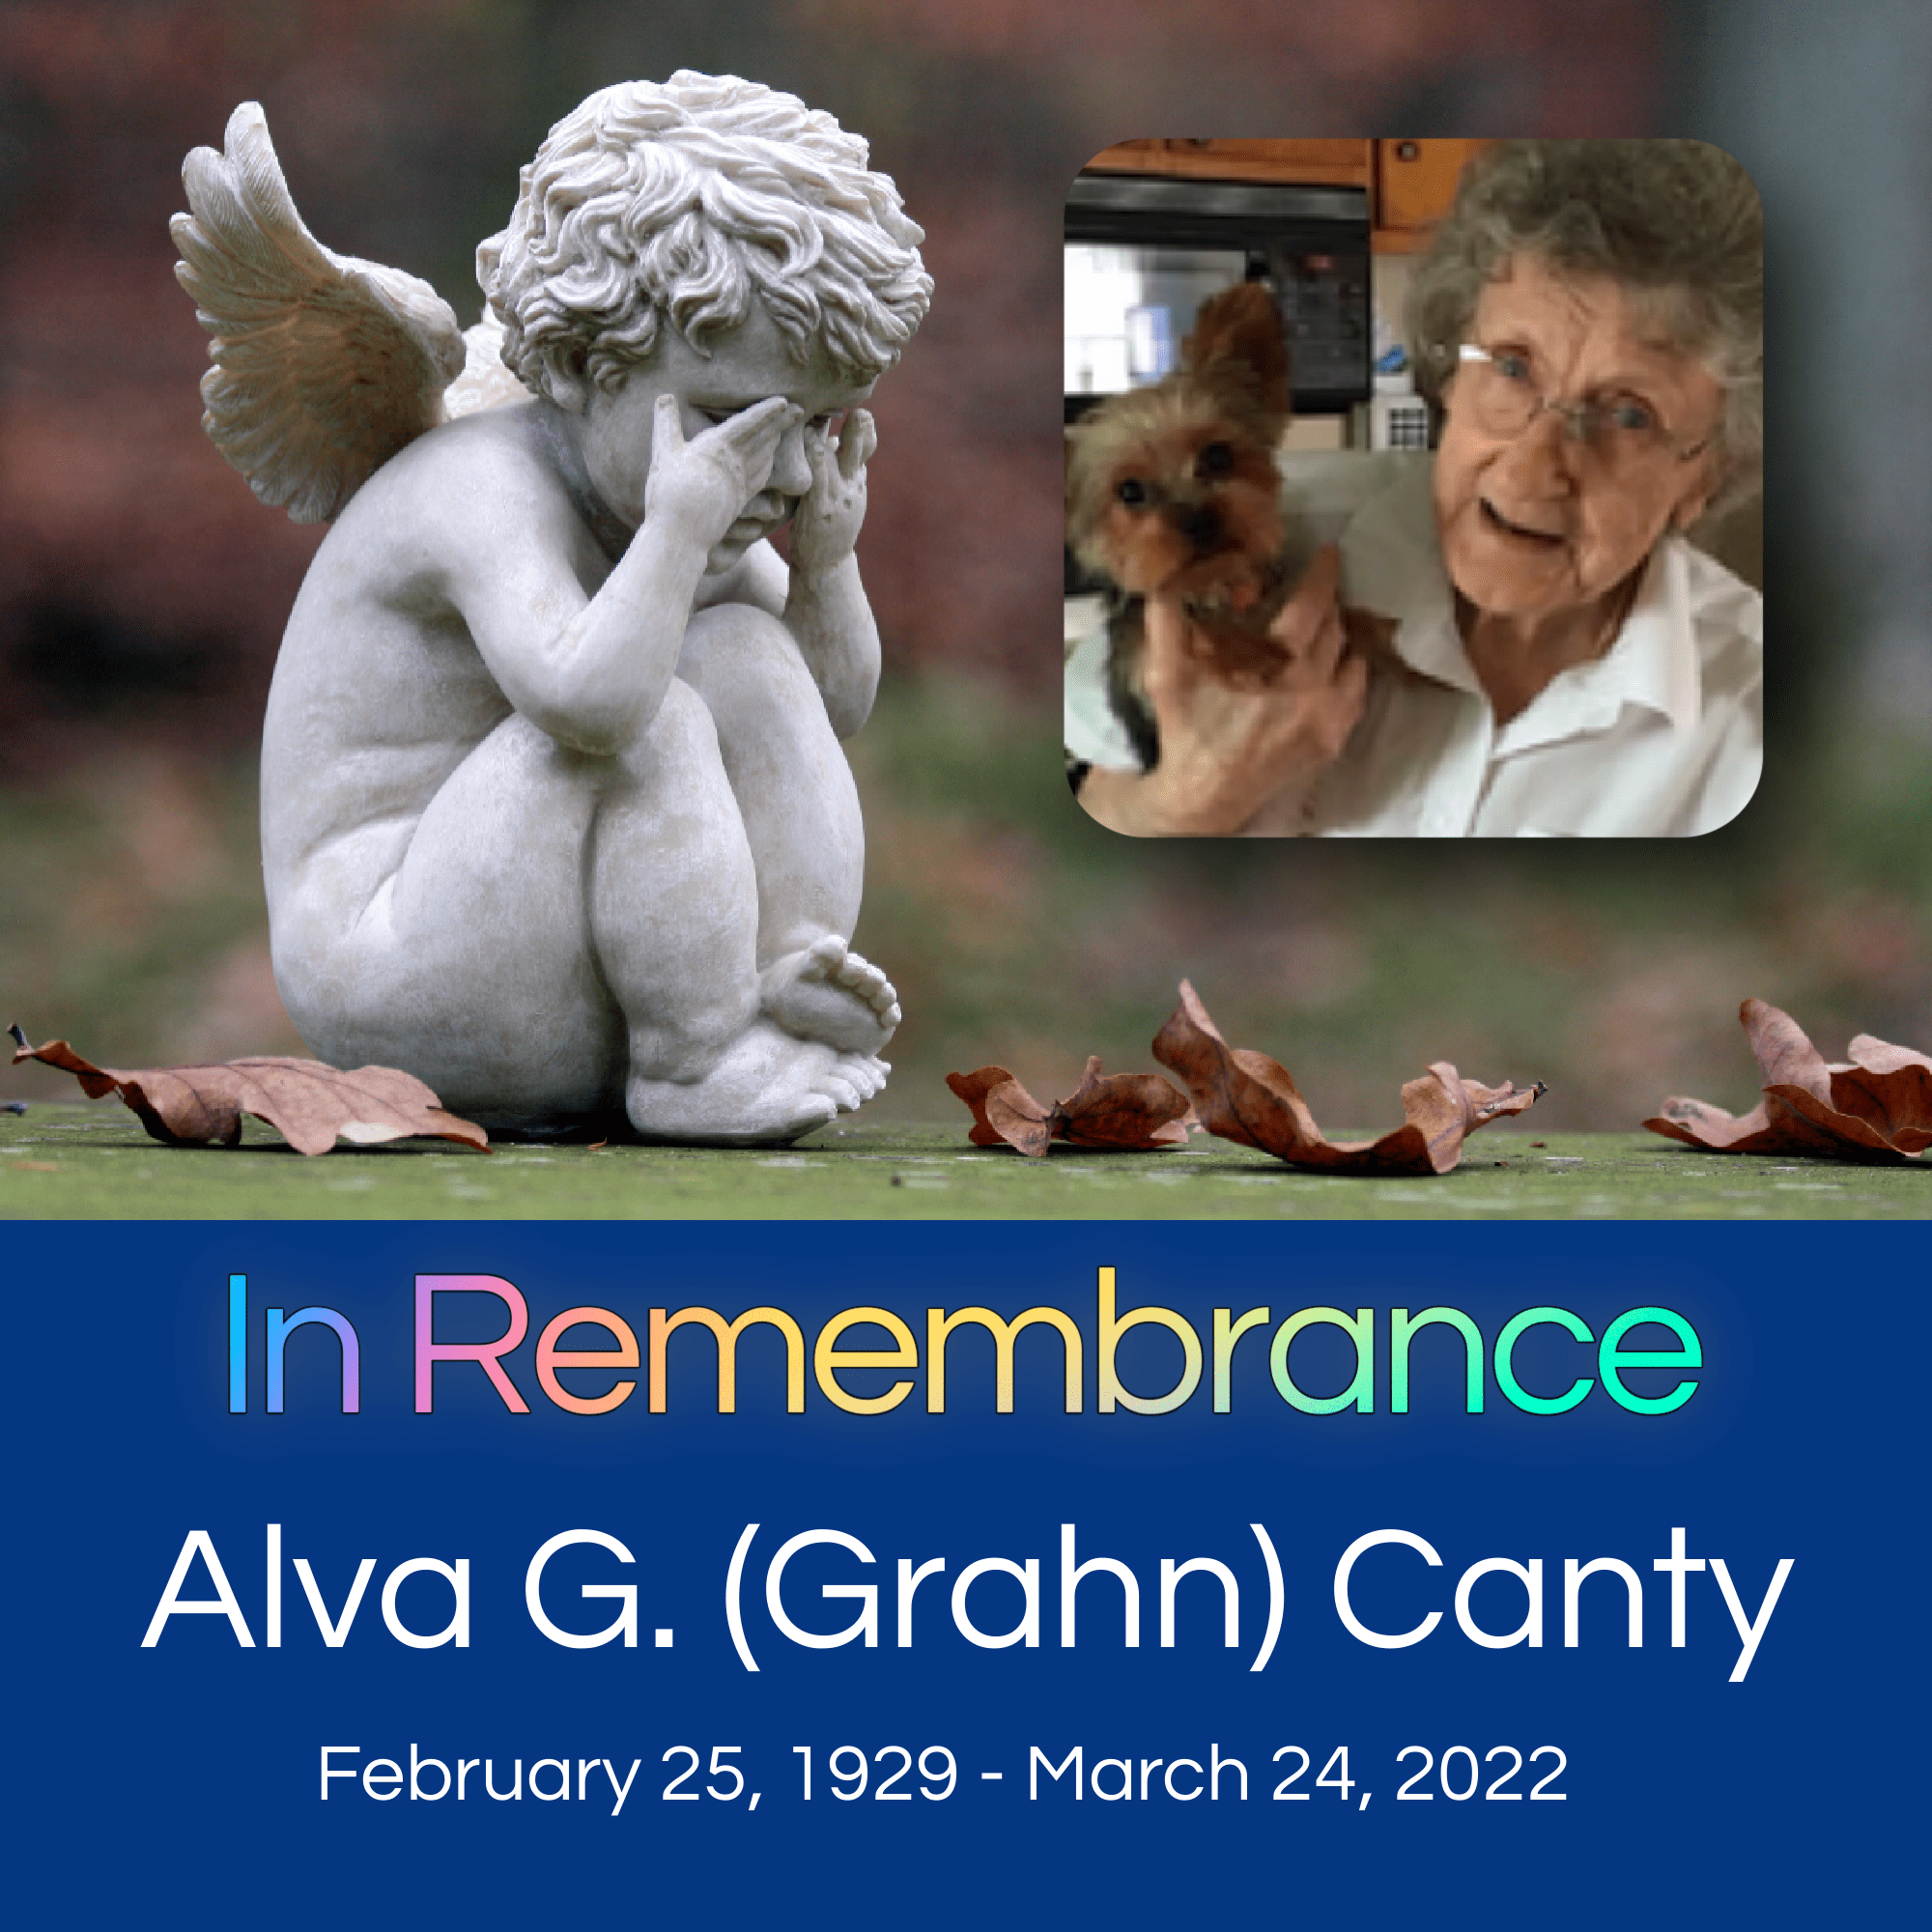 In Remembrance - Alva G. (Grahn) Canty